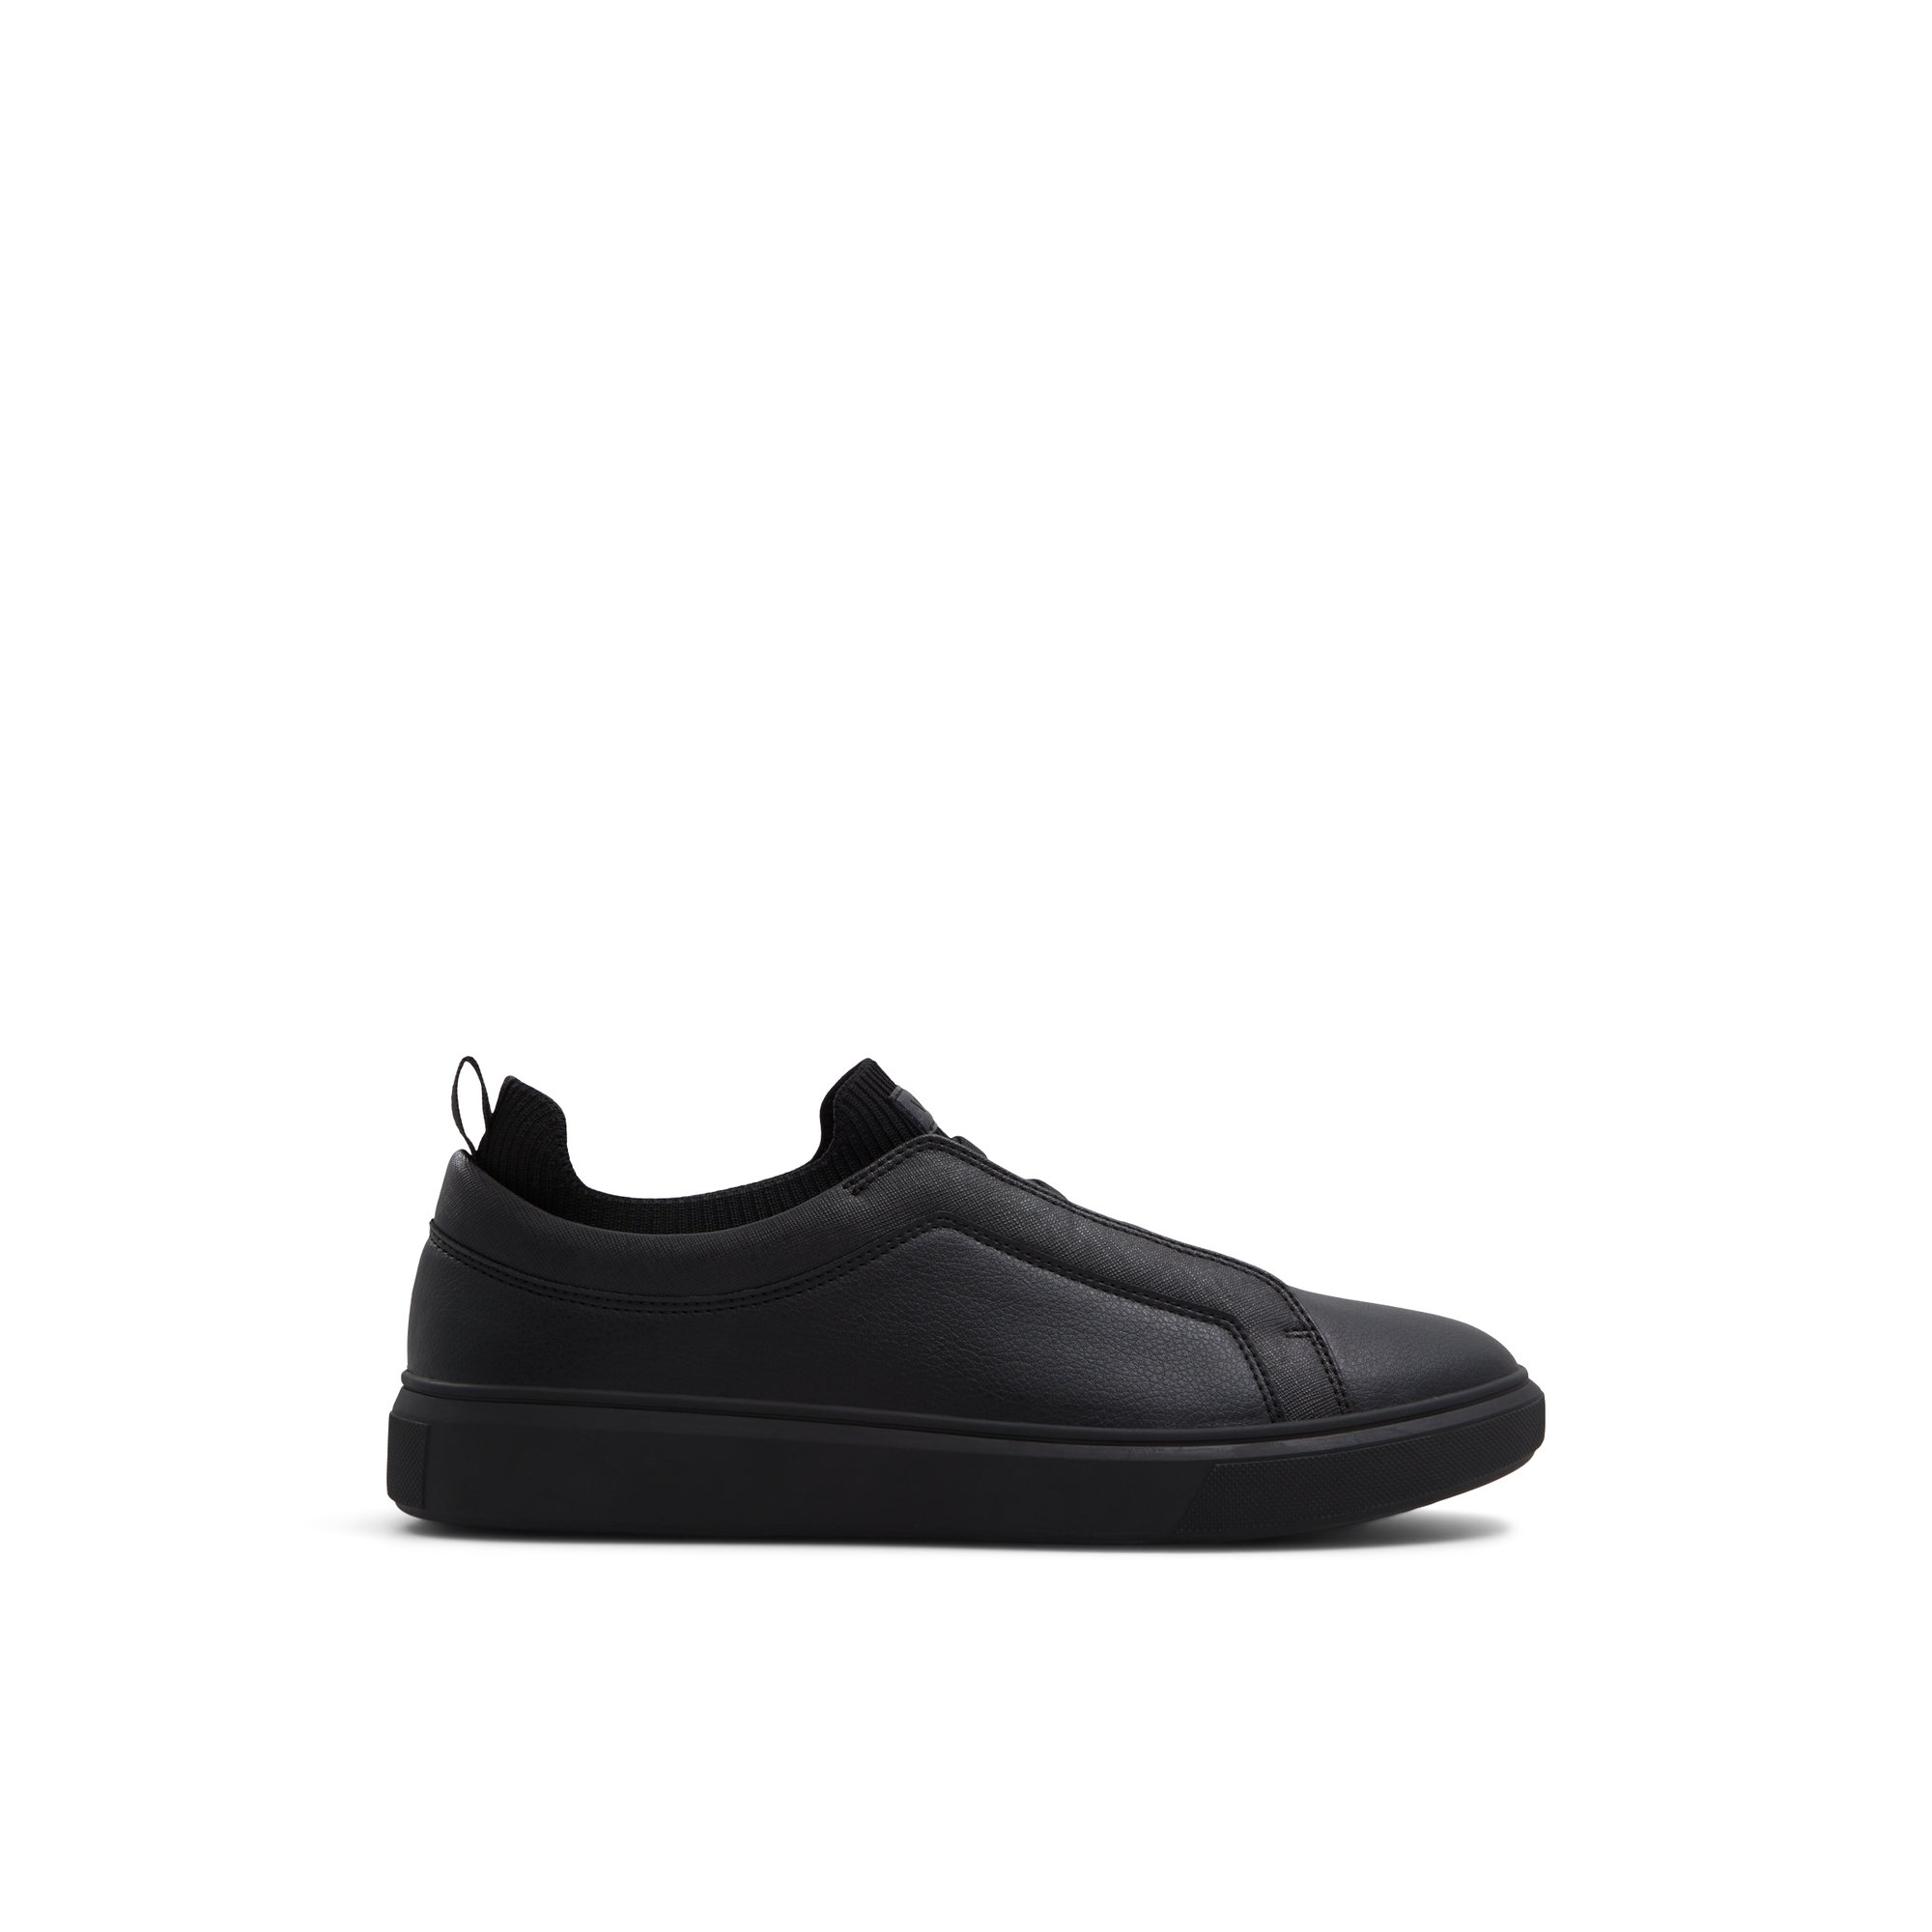 ALDO Midtown - Men's Low Top Sneakers - Black